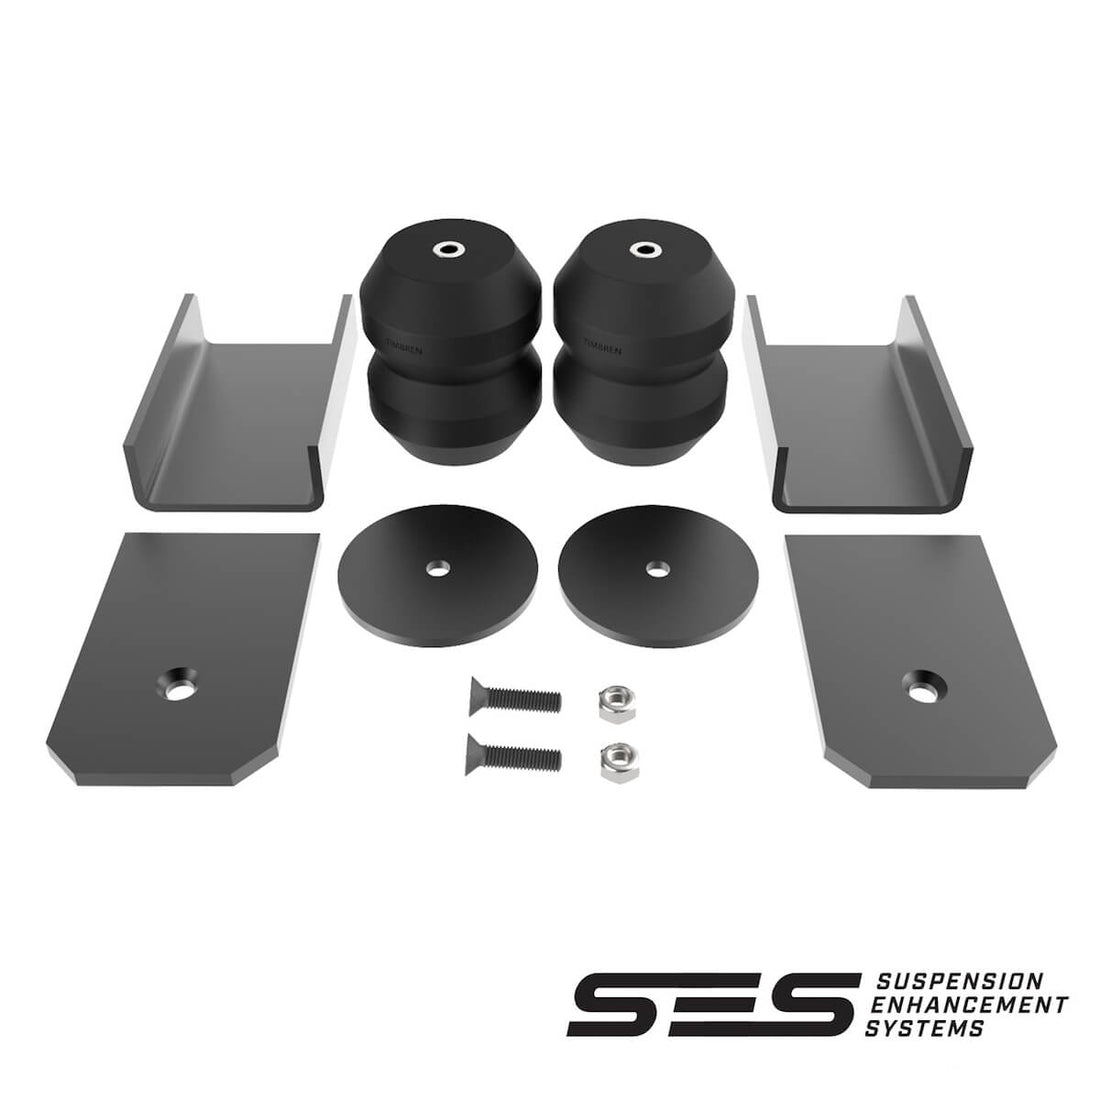 Timbren SES Suspension Enhancement System SKU# MSR001 - Front Kit